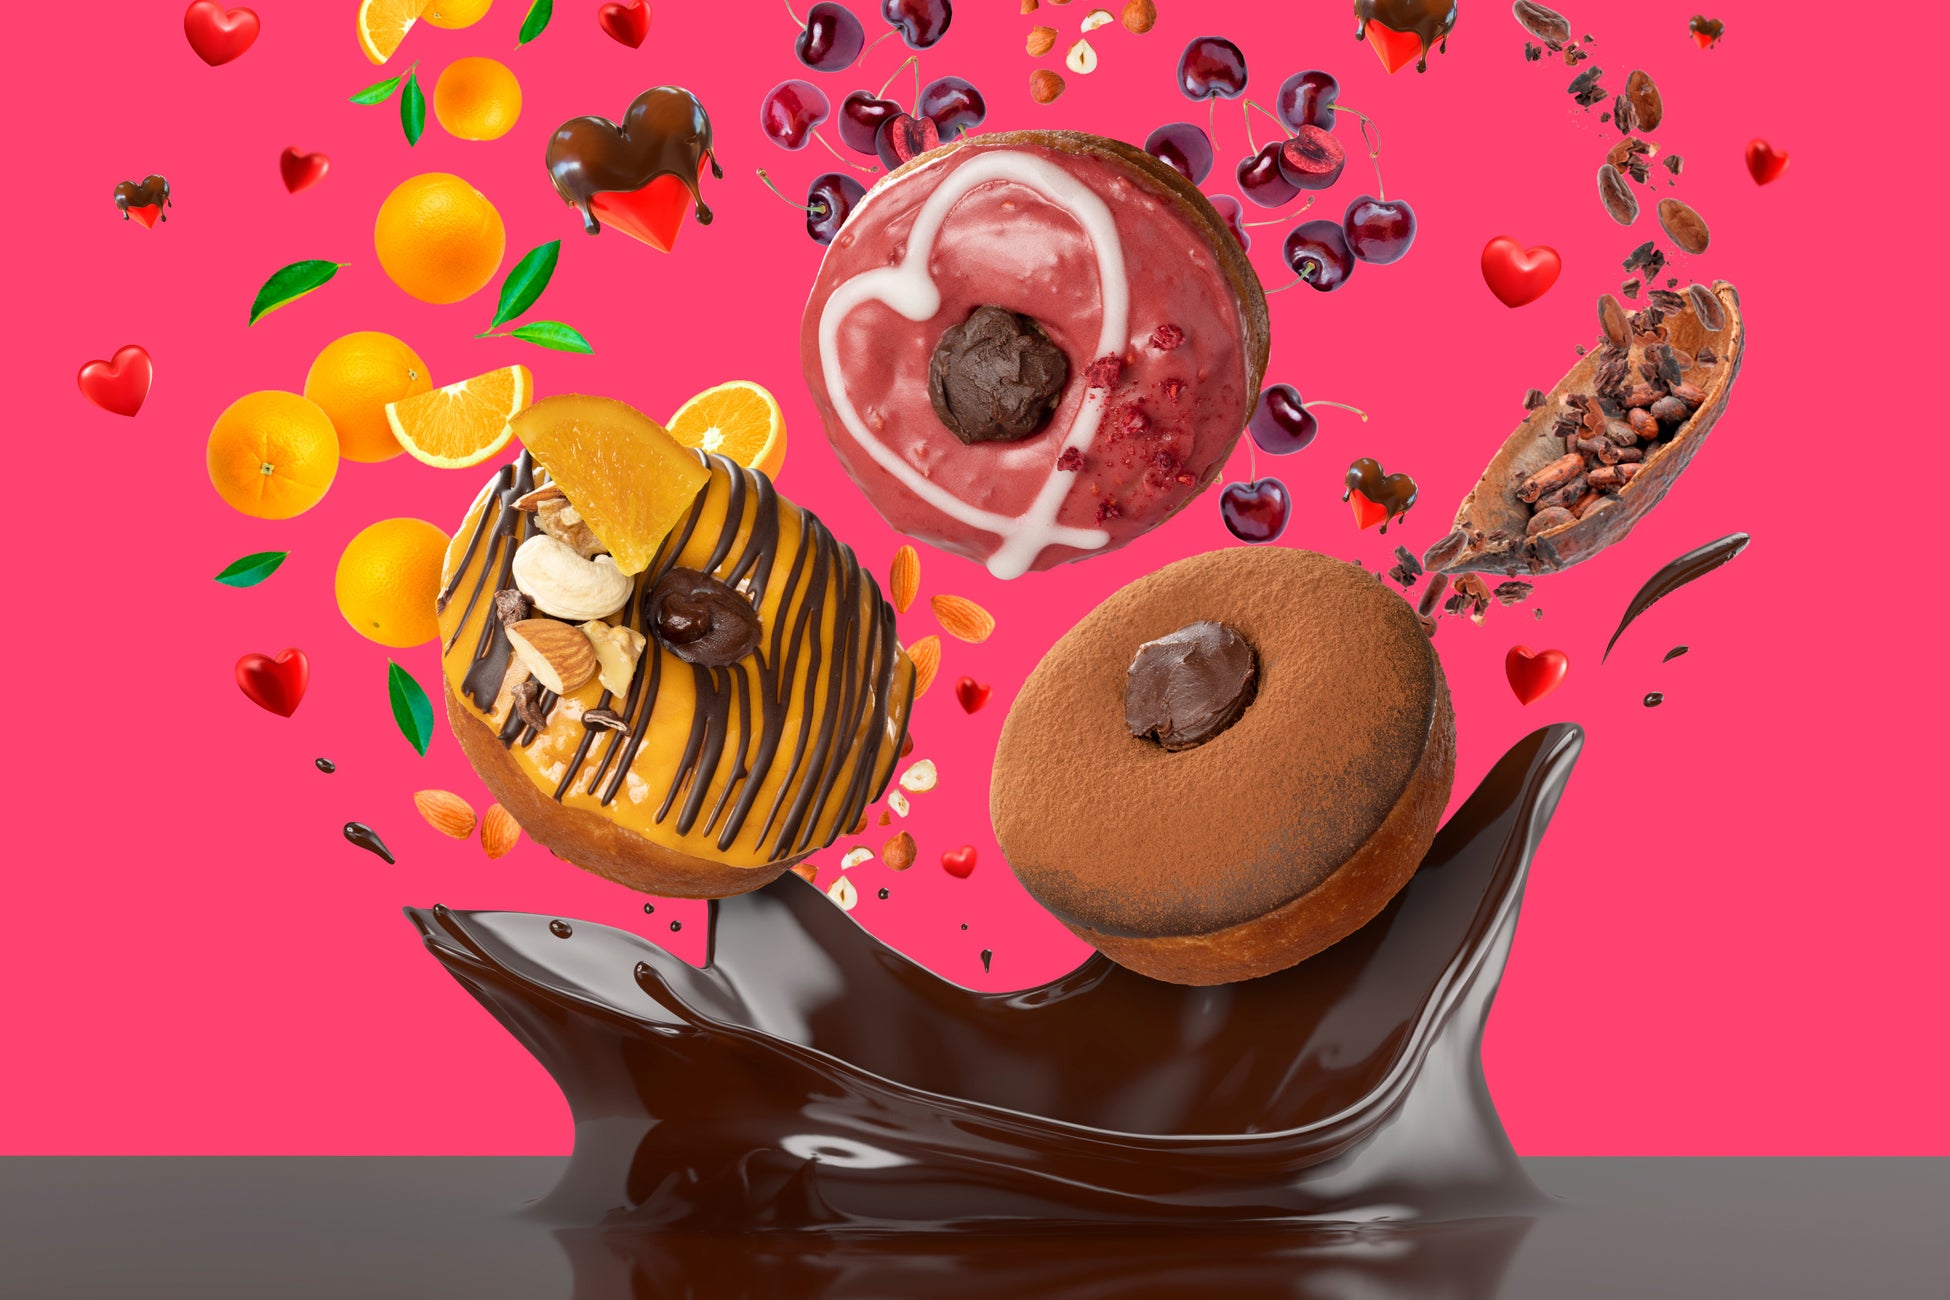 プラントベースフードブランド「2foods」から、心ときめくバレンタインに！チョコレートを存分に楽しめるプラントベースドーナツ3種 12月26日登場